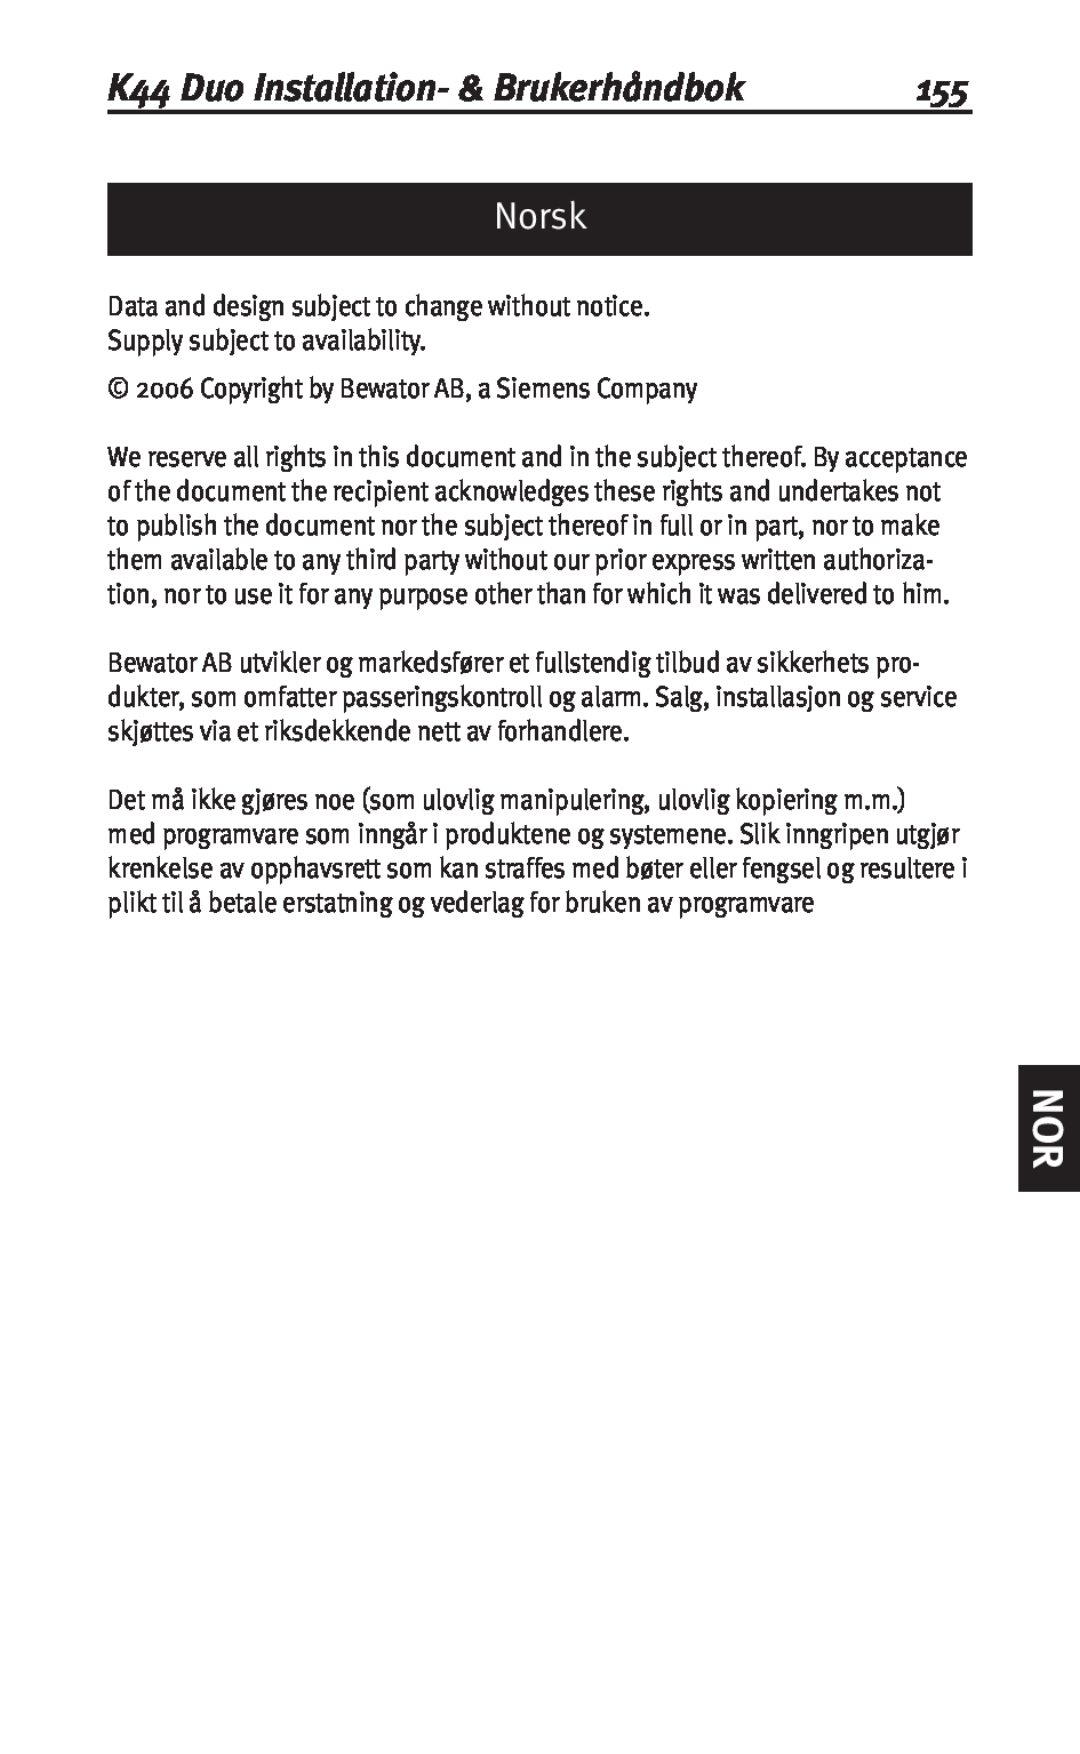 Siemens user manual Norsk, K44 Duo Installation- & Brukerhåndbok 